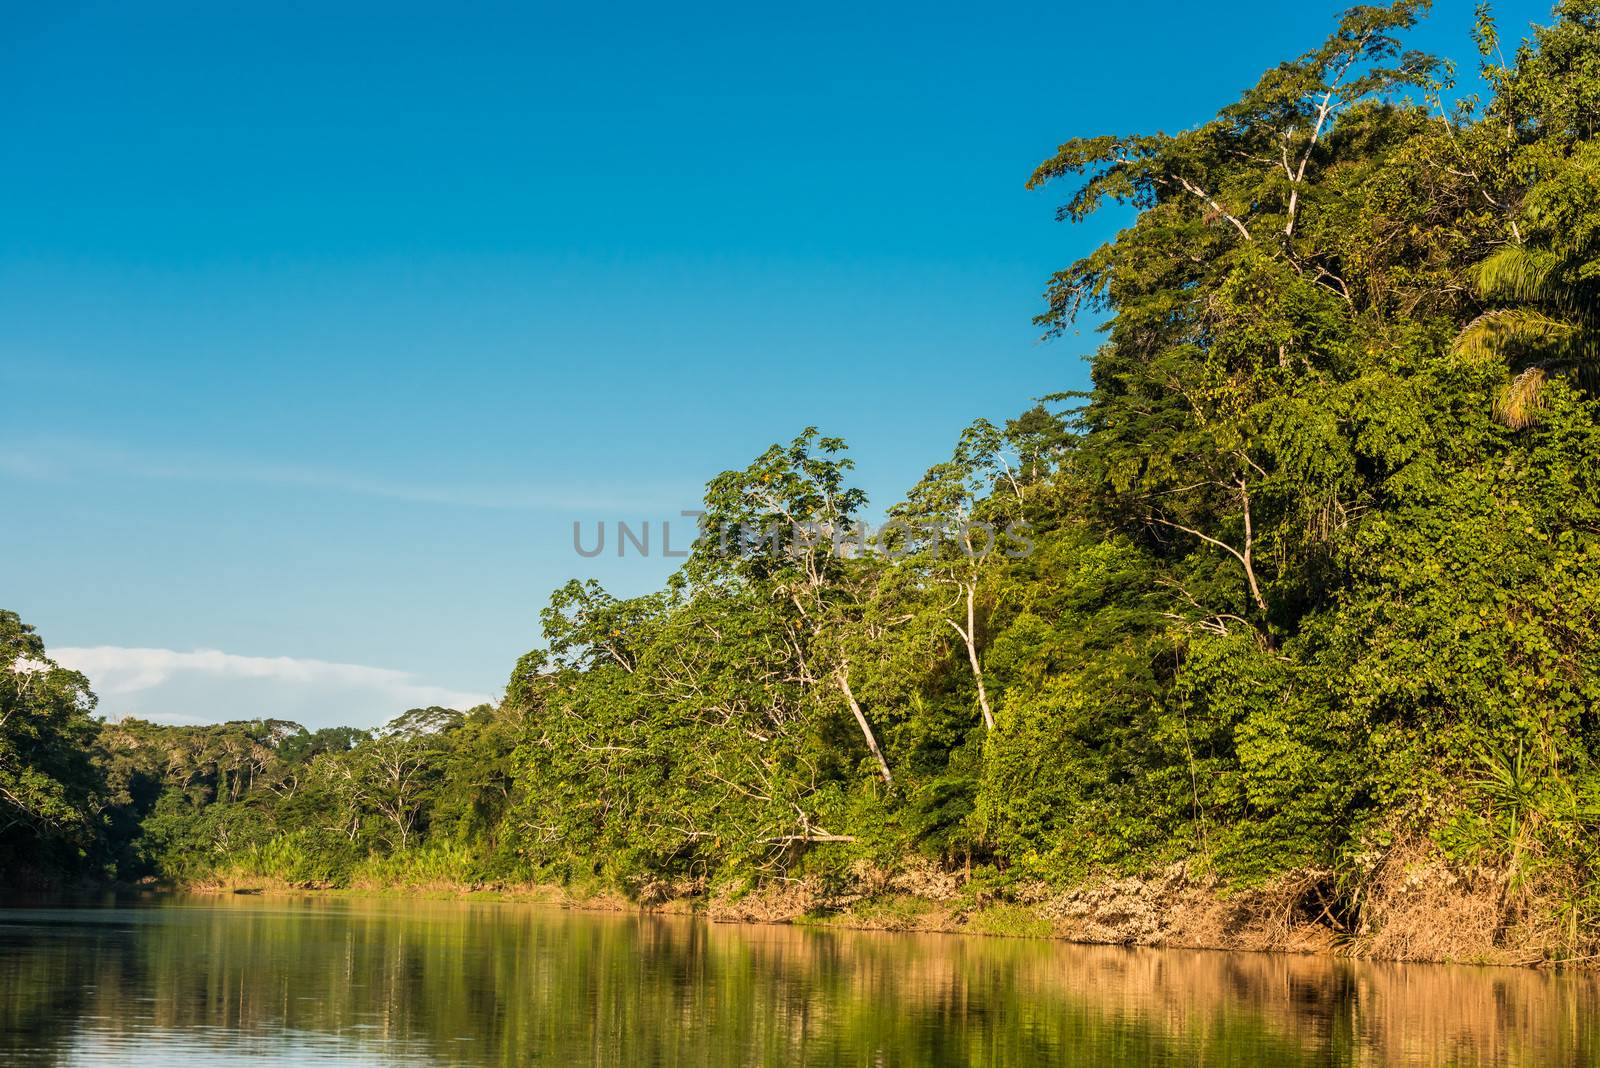 heath river peruvian Amazon jungle Madre de Dios Peru by PIXSTILL